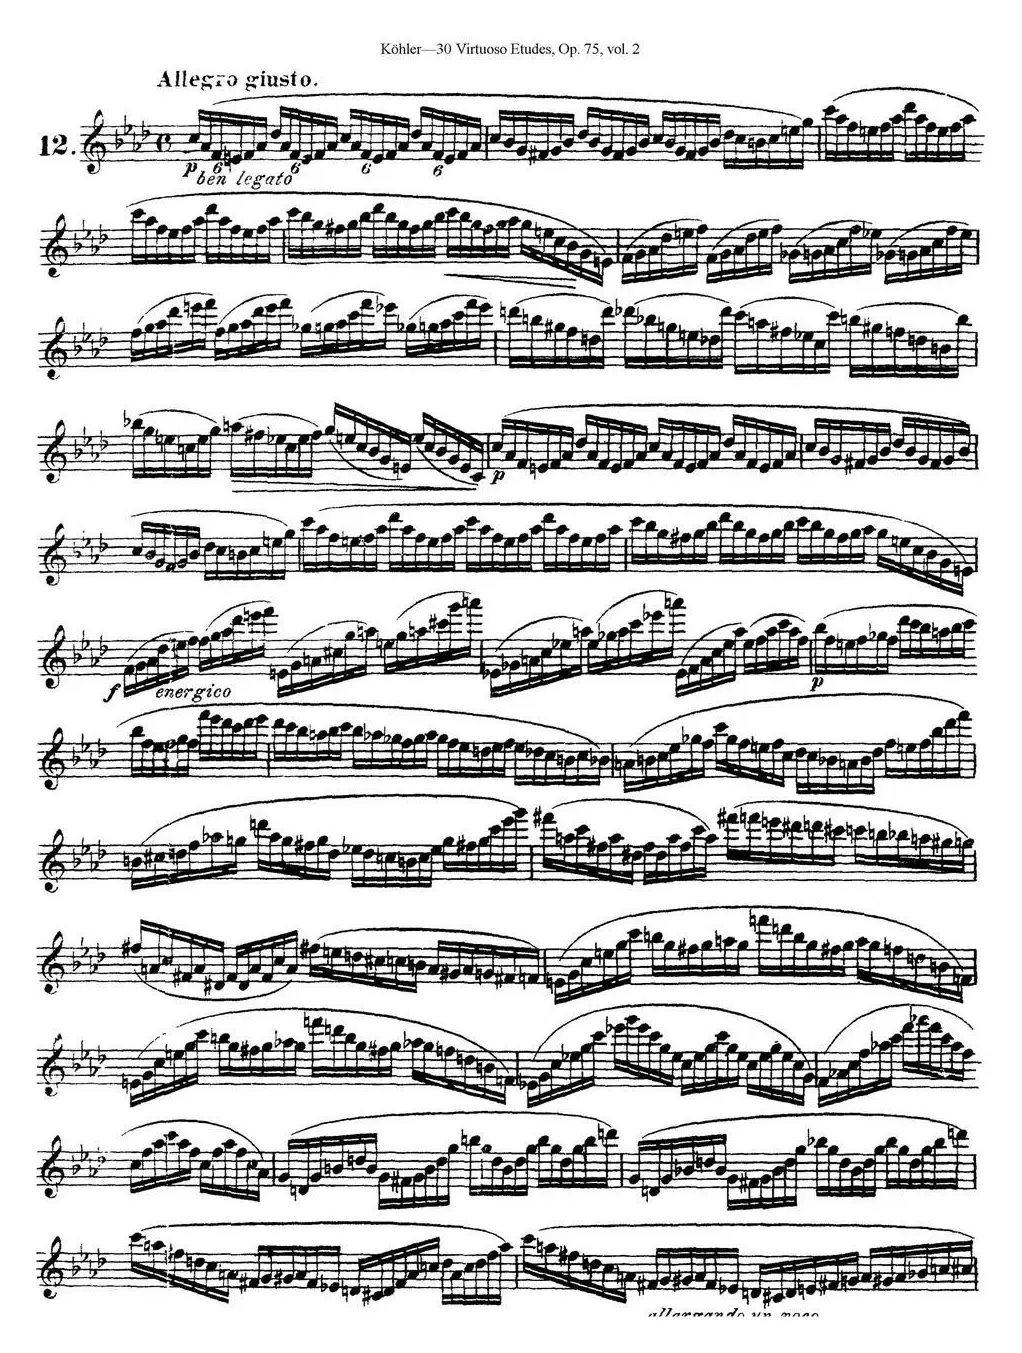 柯勒30首高级长笛练习曲作品75号（NO.12）